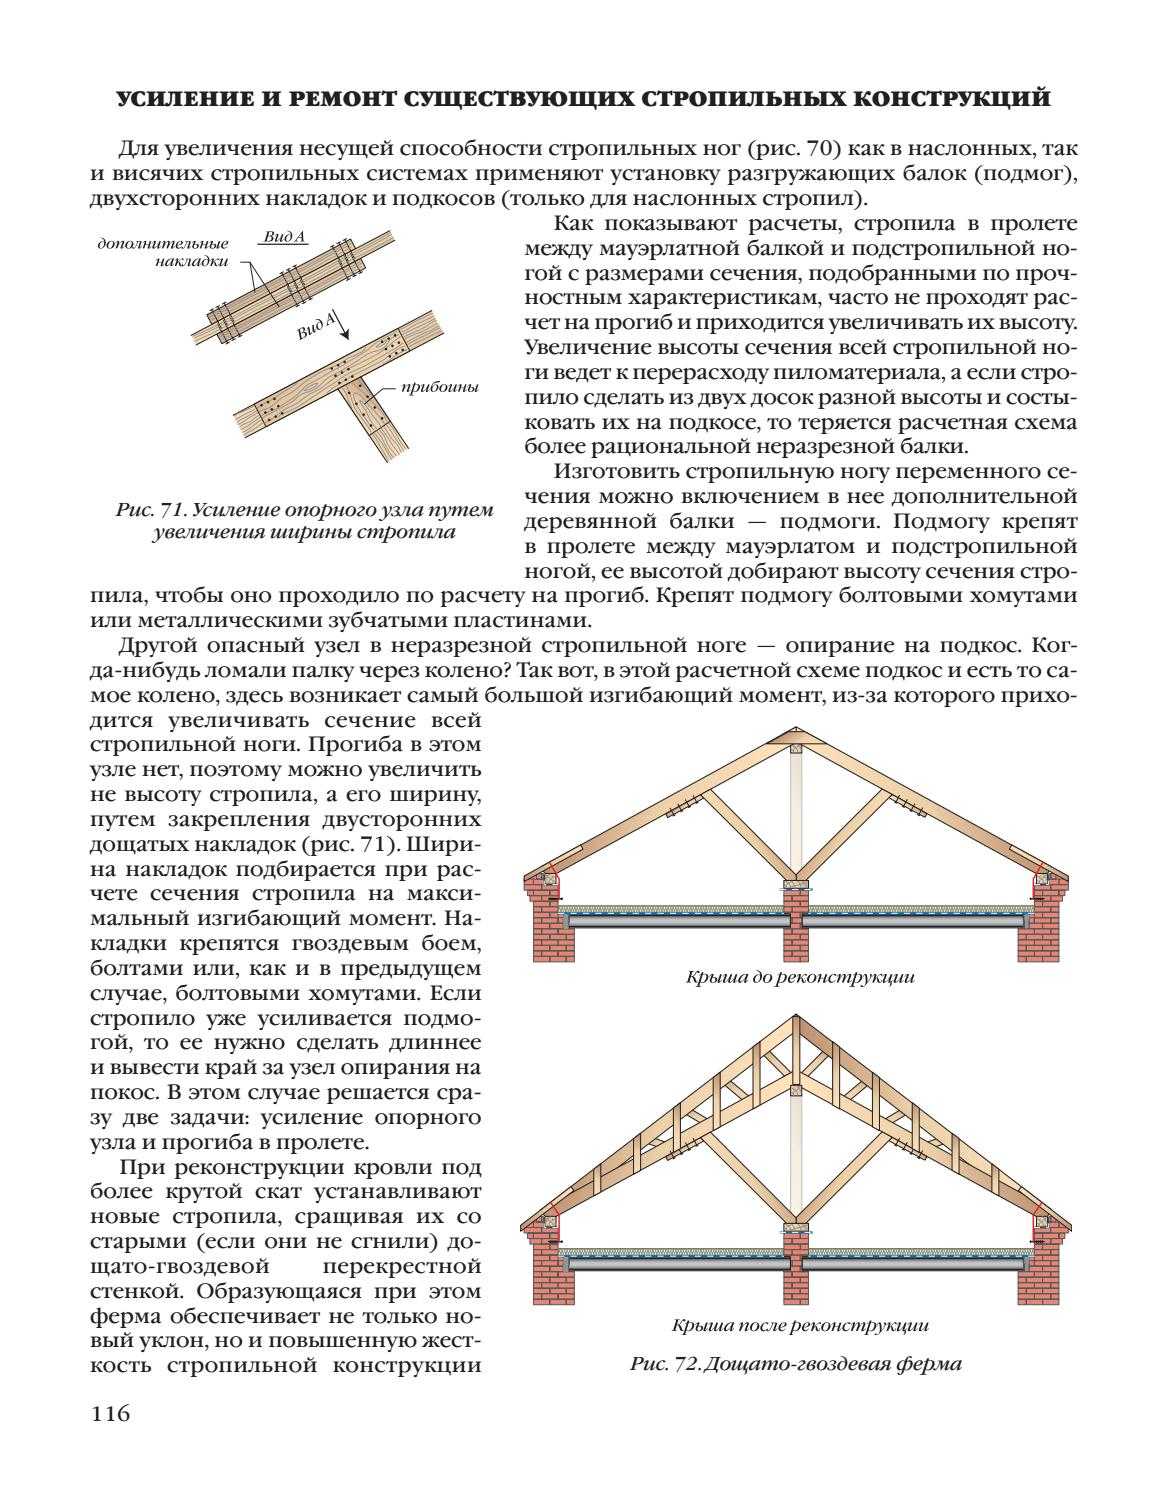 Правила определения технико-экономических показателей для проектируемого жилого здания